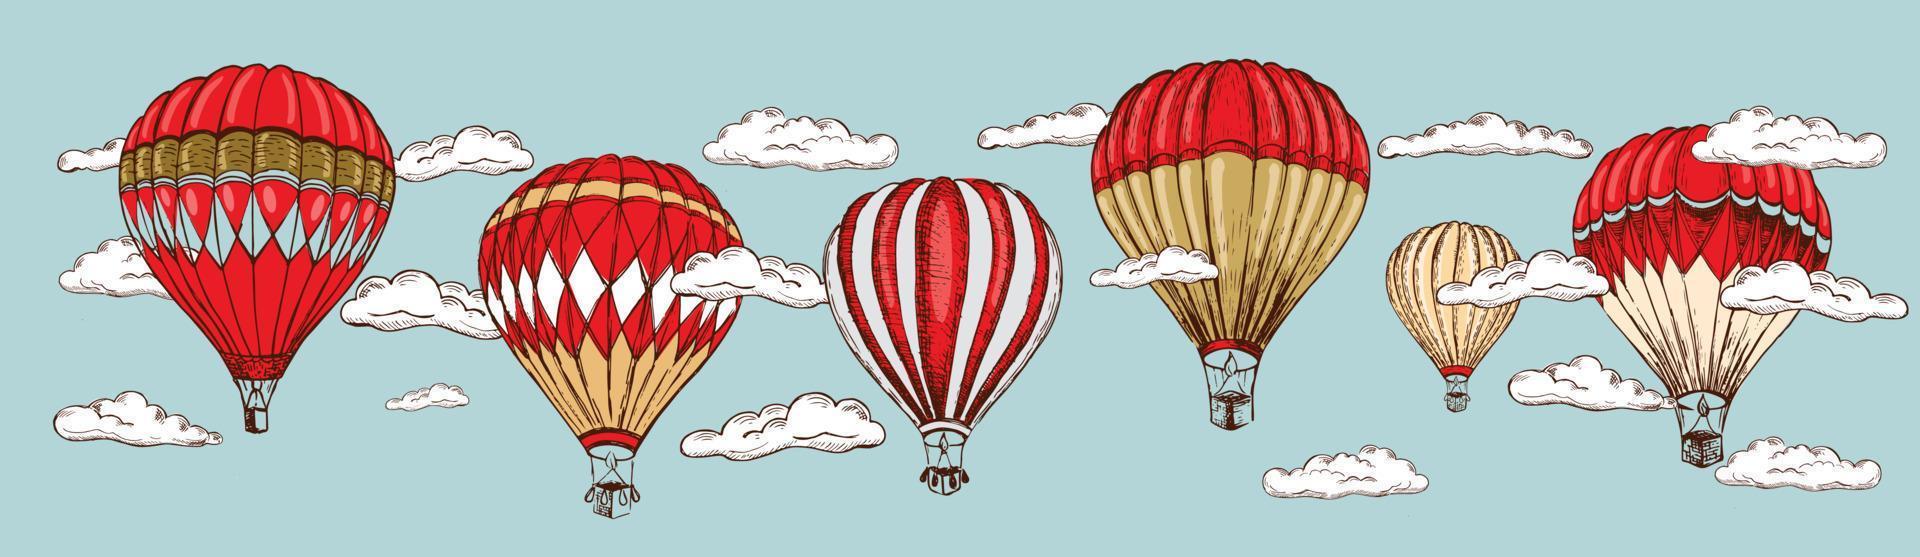 globos aerostáticos volando. ilustración dibujada a mano vector